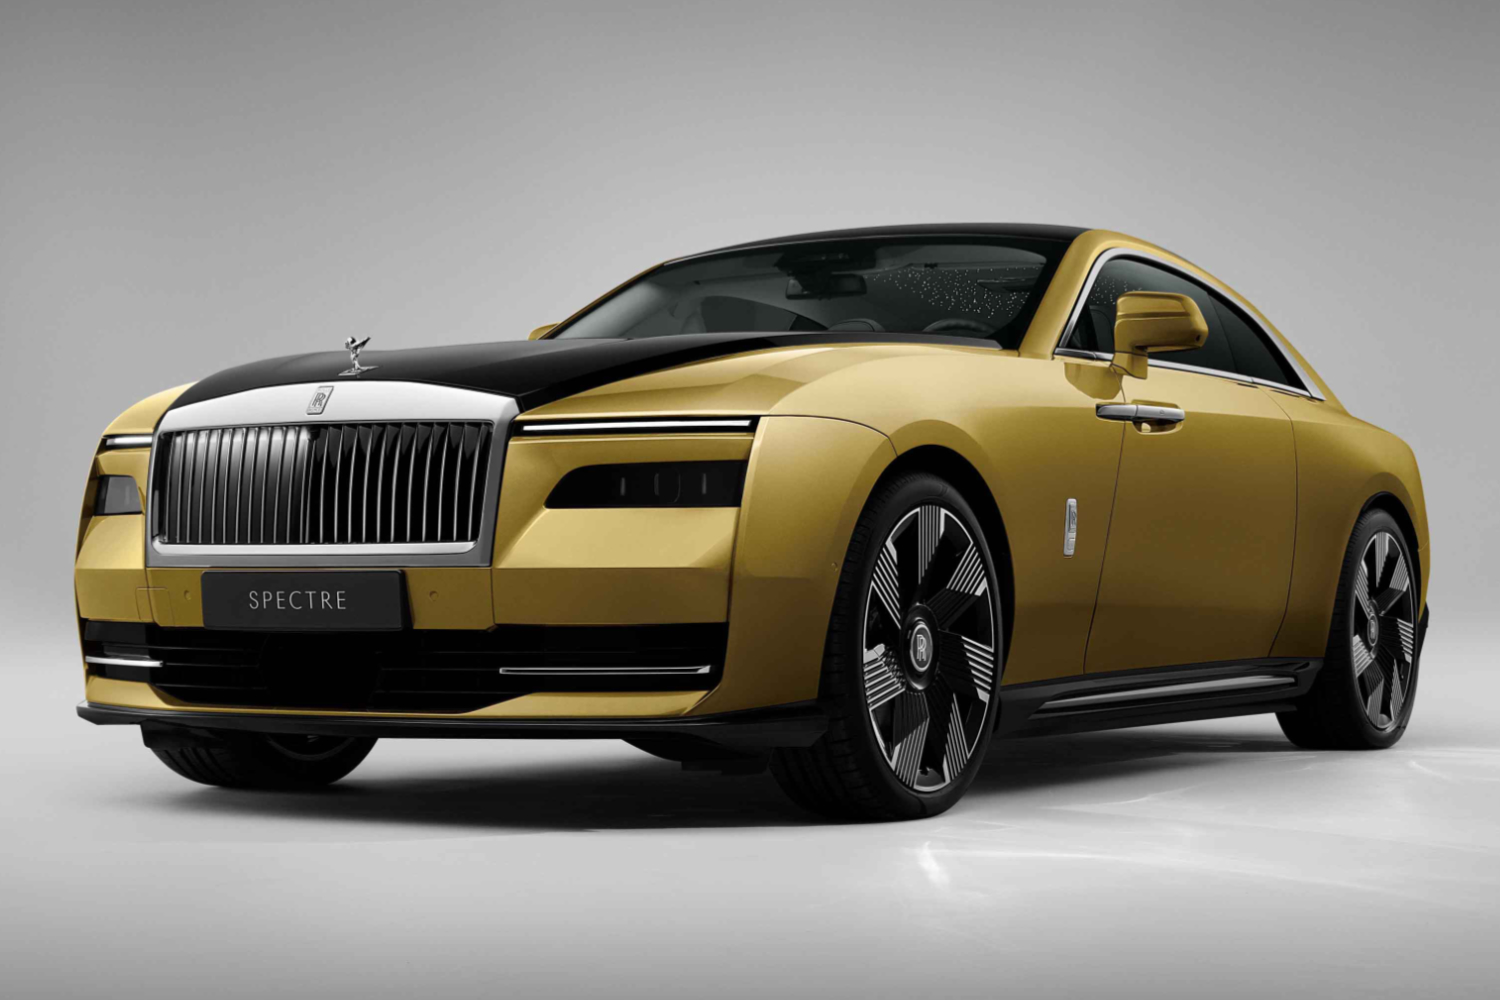 Rolls-Royce Spectre is company’s first EV. Image by Rolls-Royce.